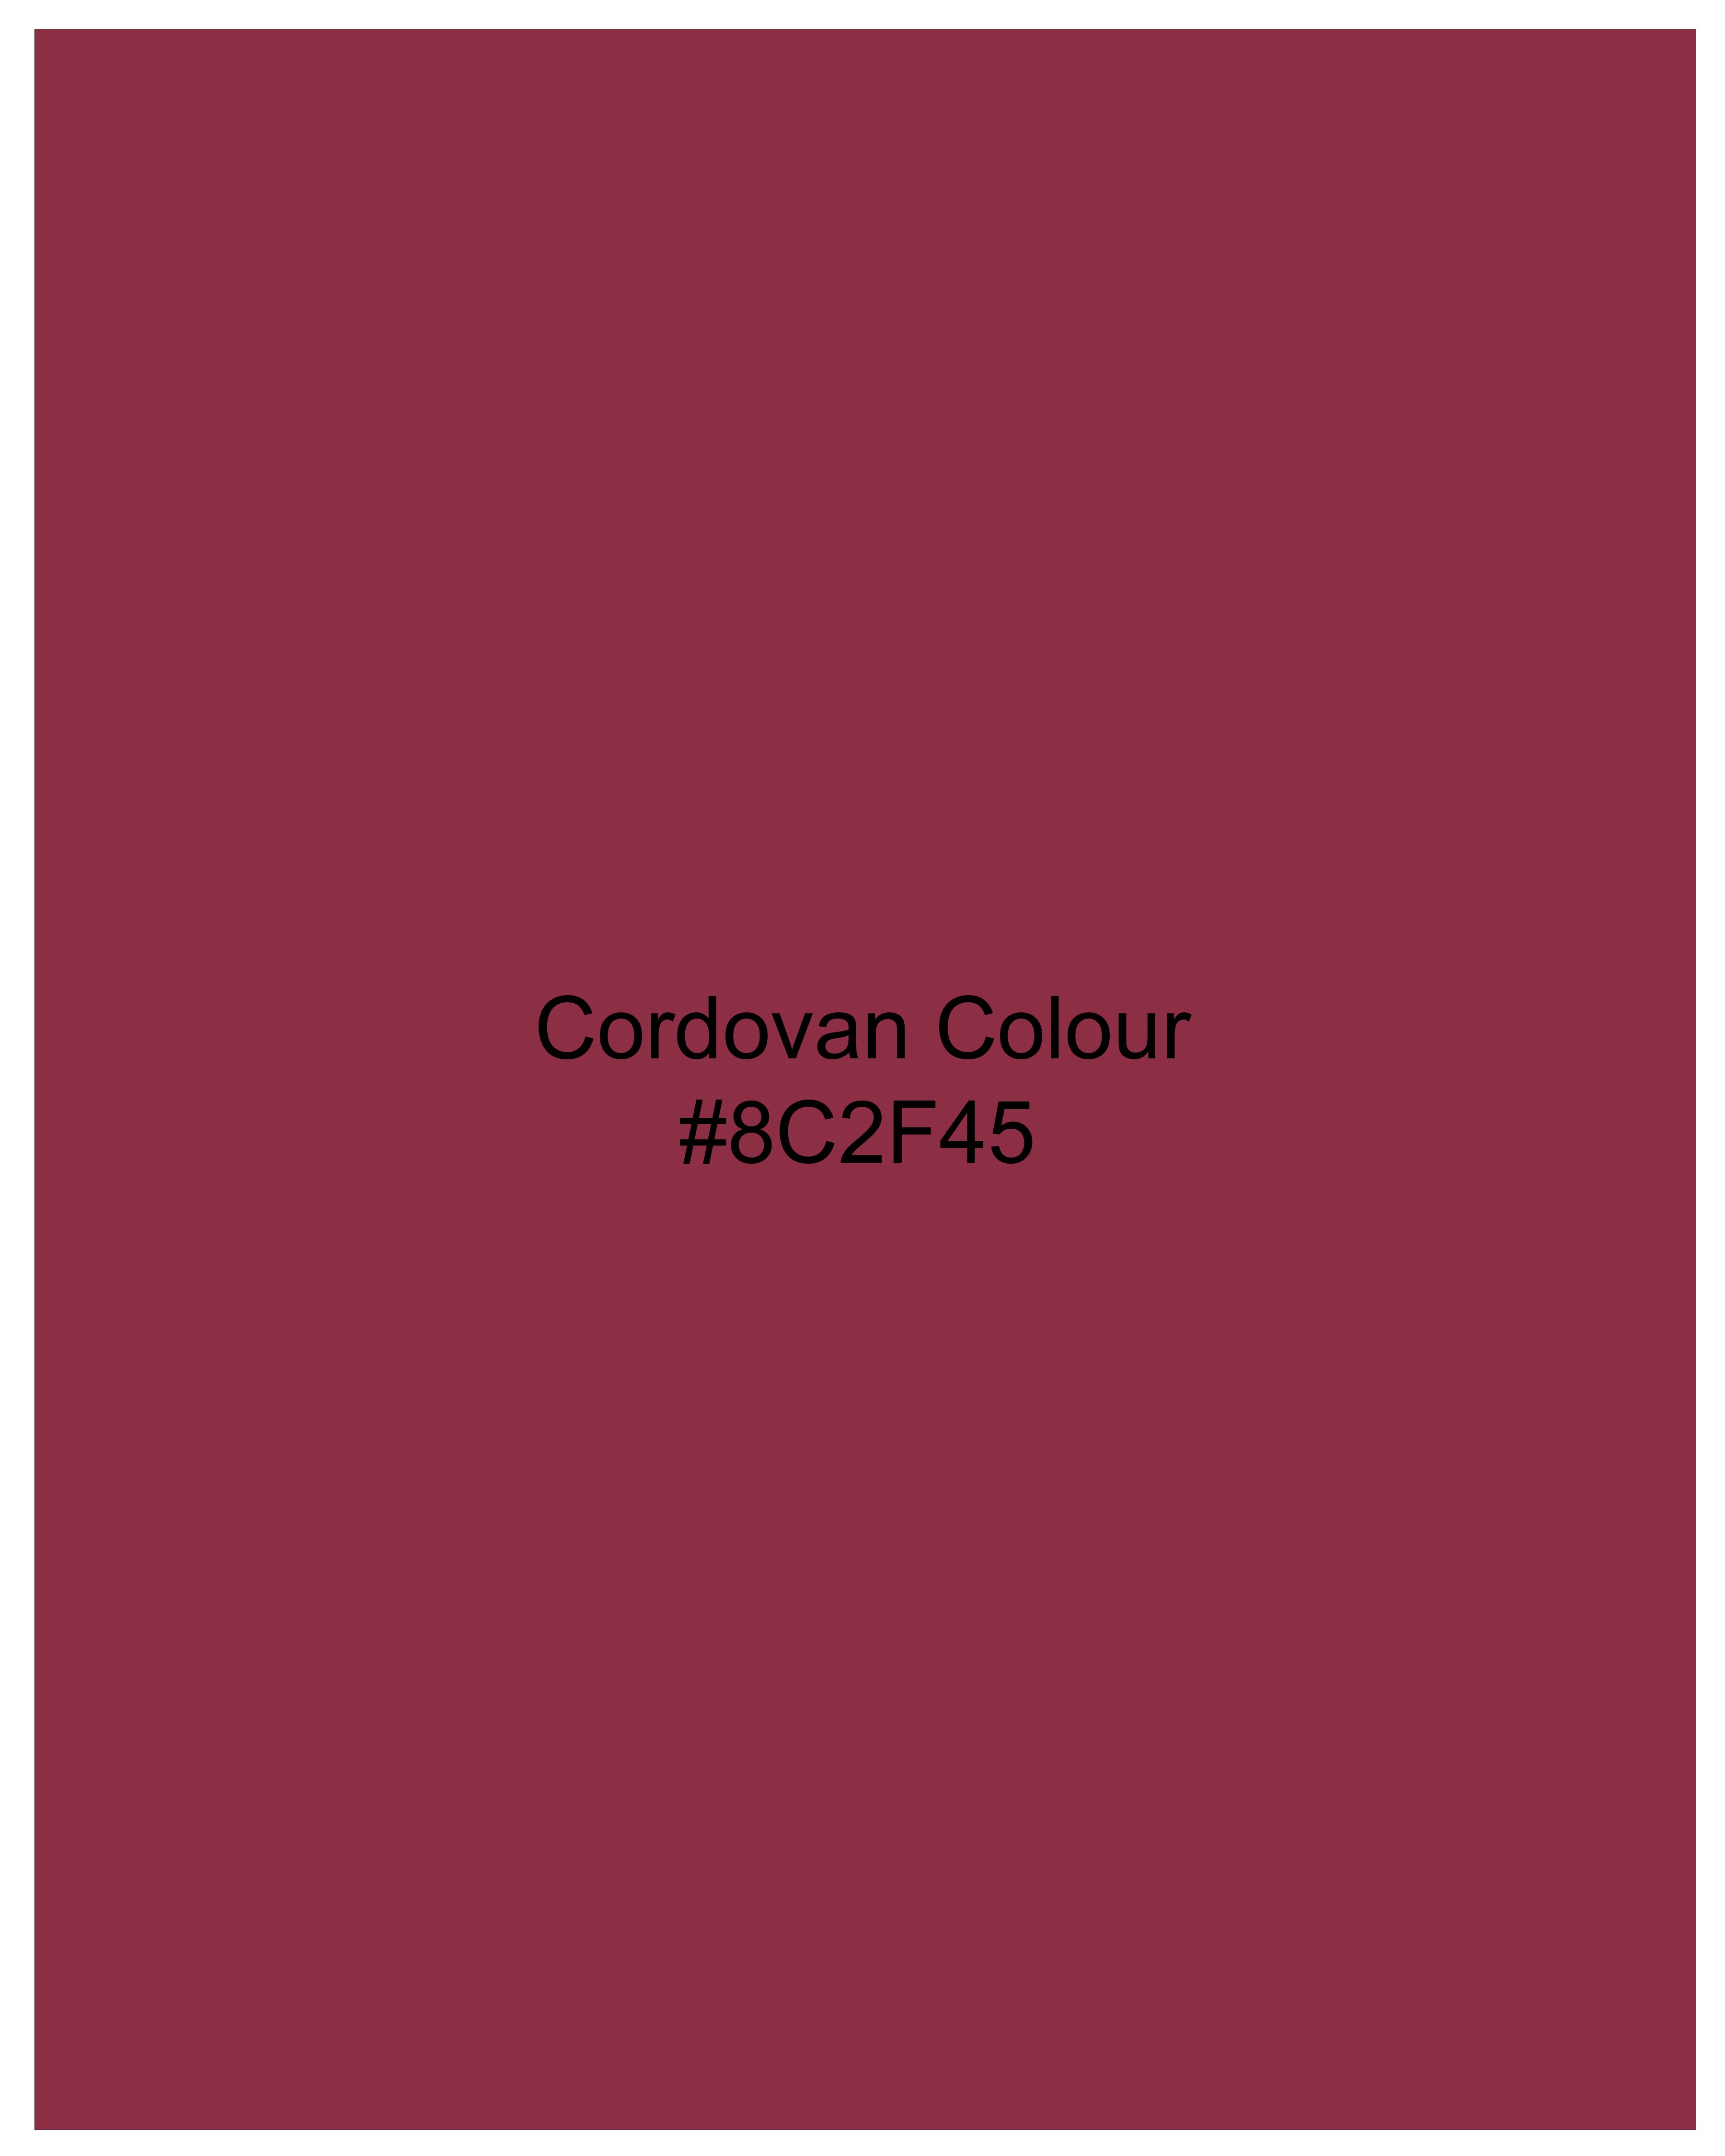 Cordovan Maroon Organic Cotton Mercerised Pique Polo TS860-S, TS860-M, TS860-L, TS860-XL, TS860-XXL